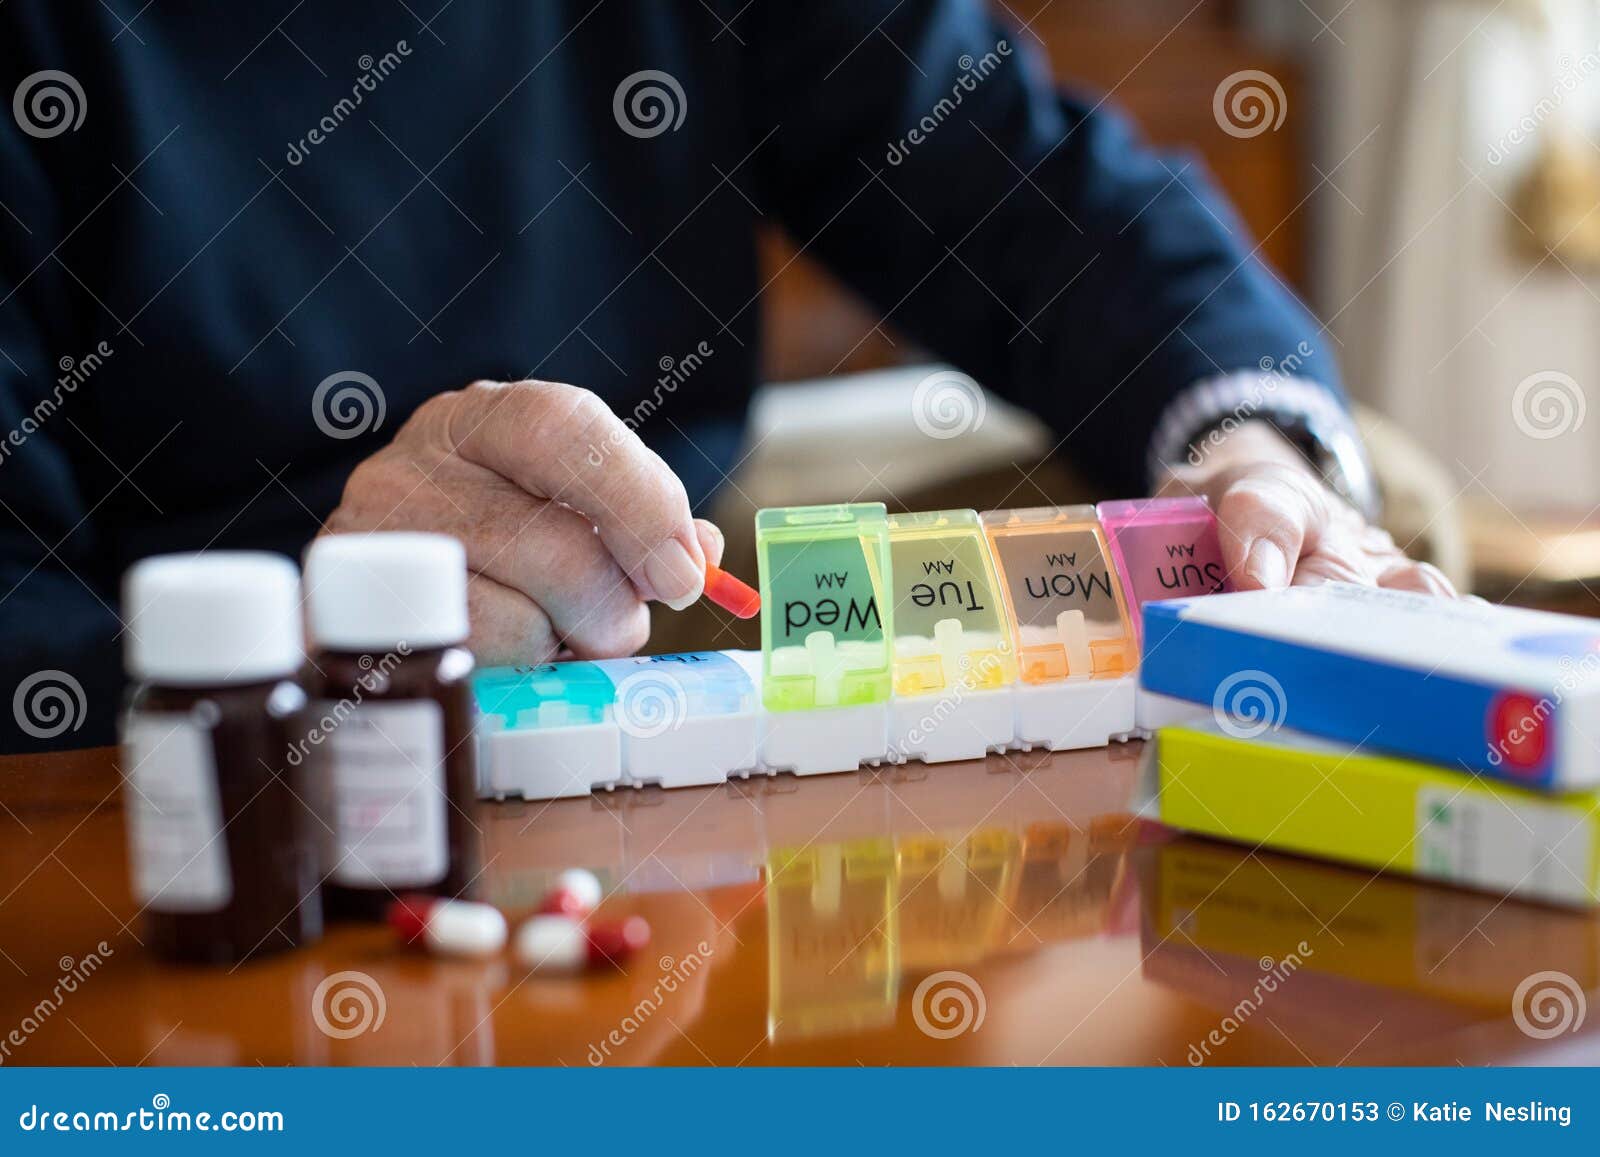 close up of senior man organizing medication into pill dispenser